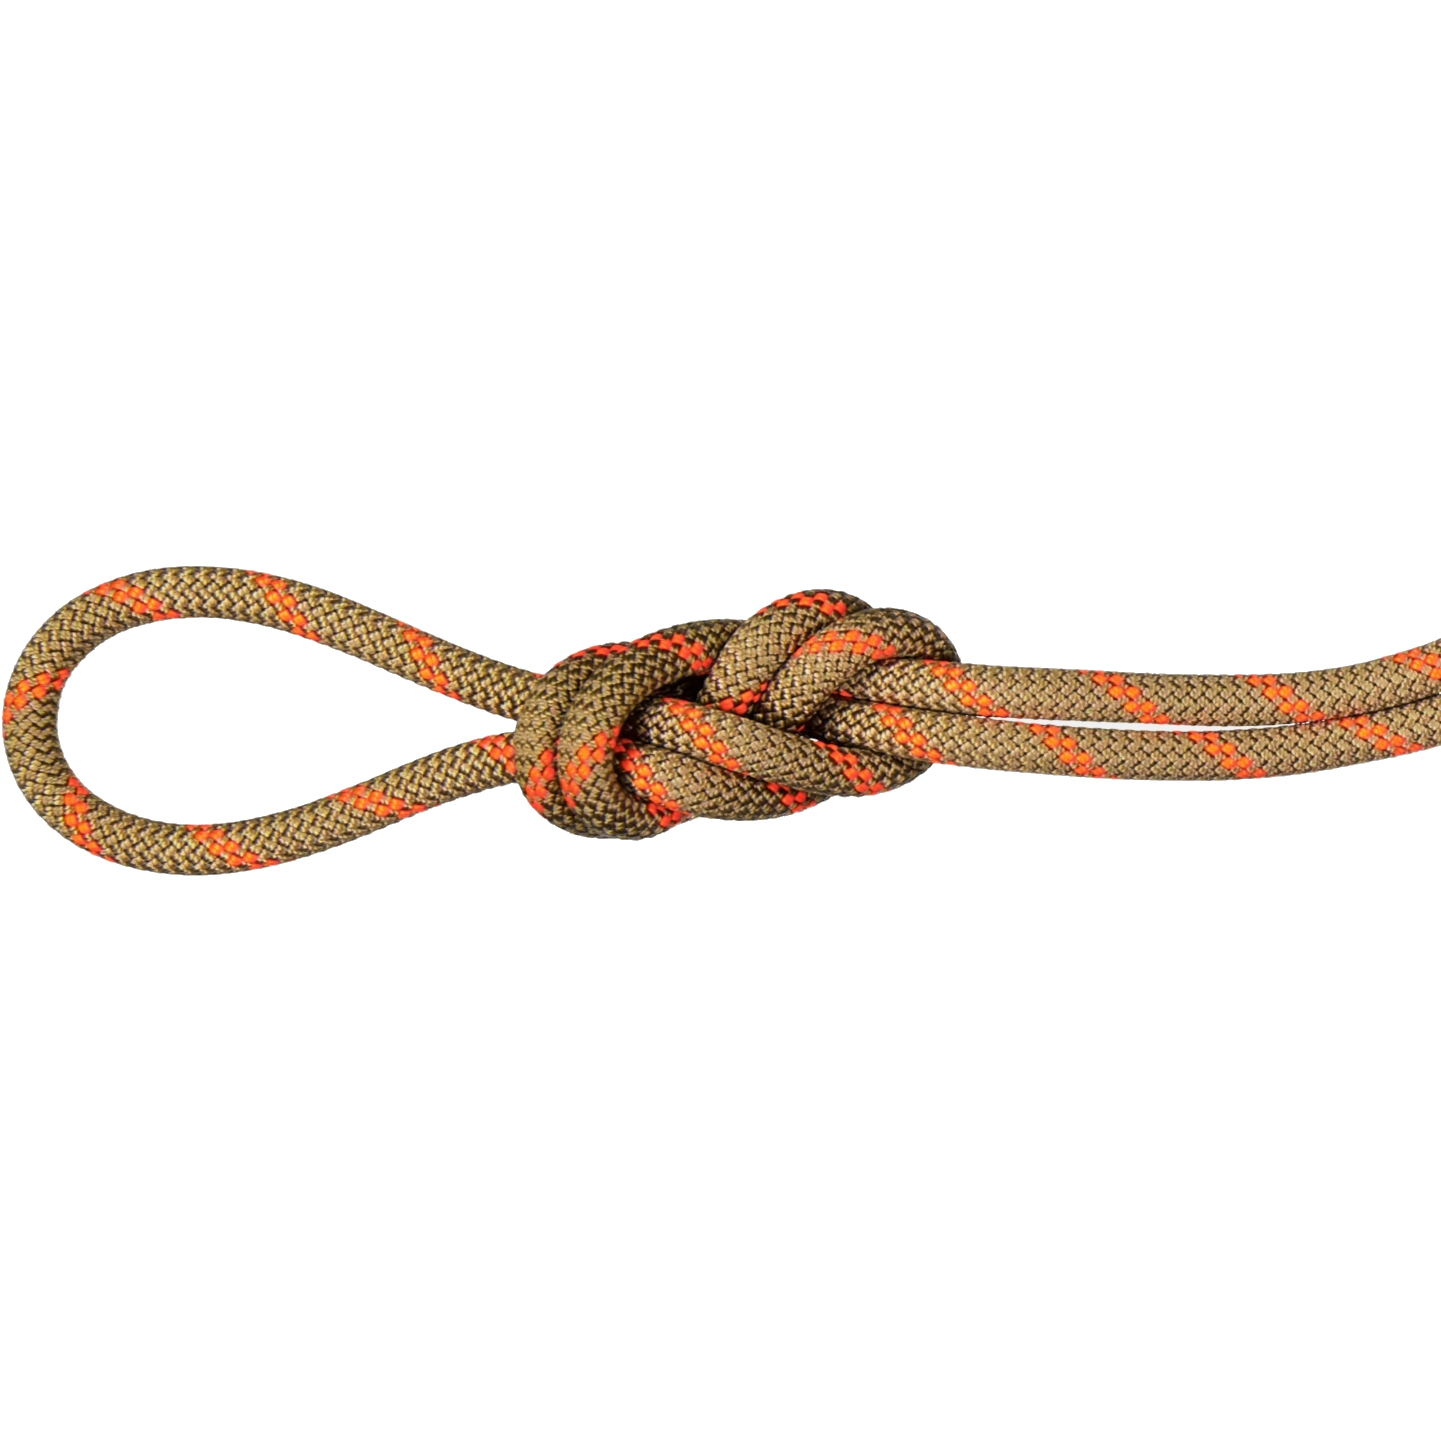 Produktbild von Mammut 8.0 Alpine Dry Seil - 60m - boa-safety orange